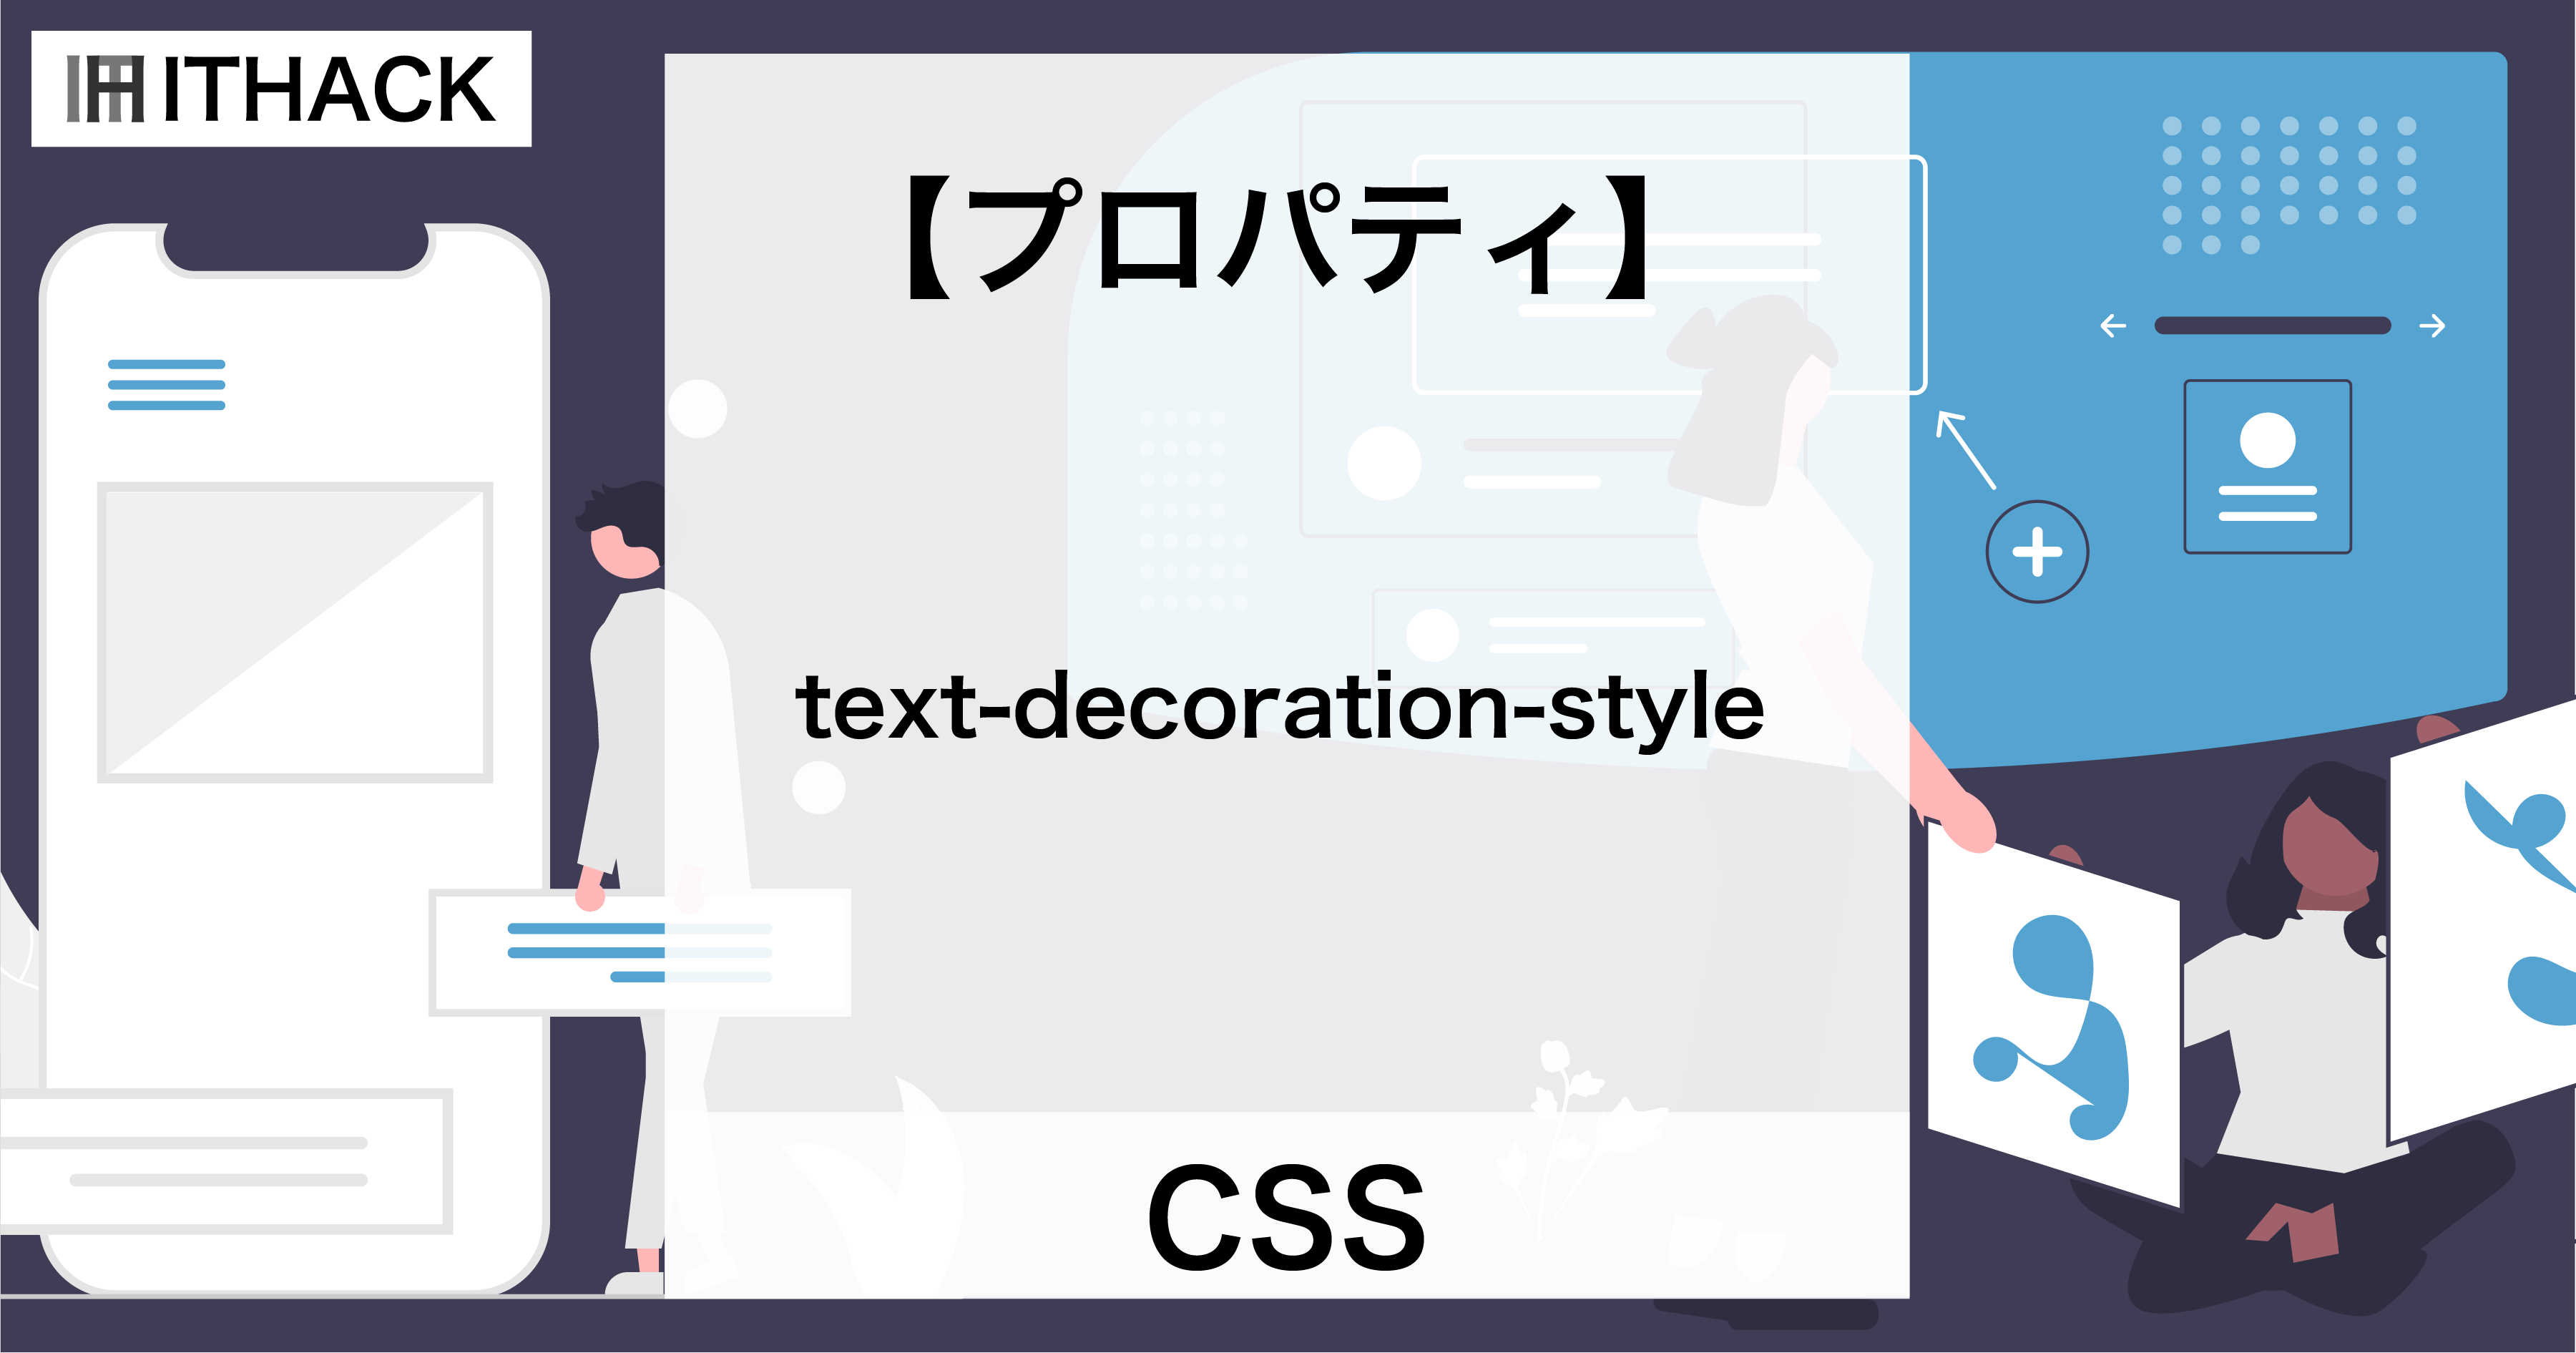 【CSS】text-decoration-style - テキストの装飾（線の様式）